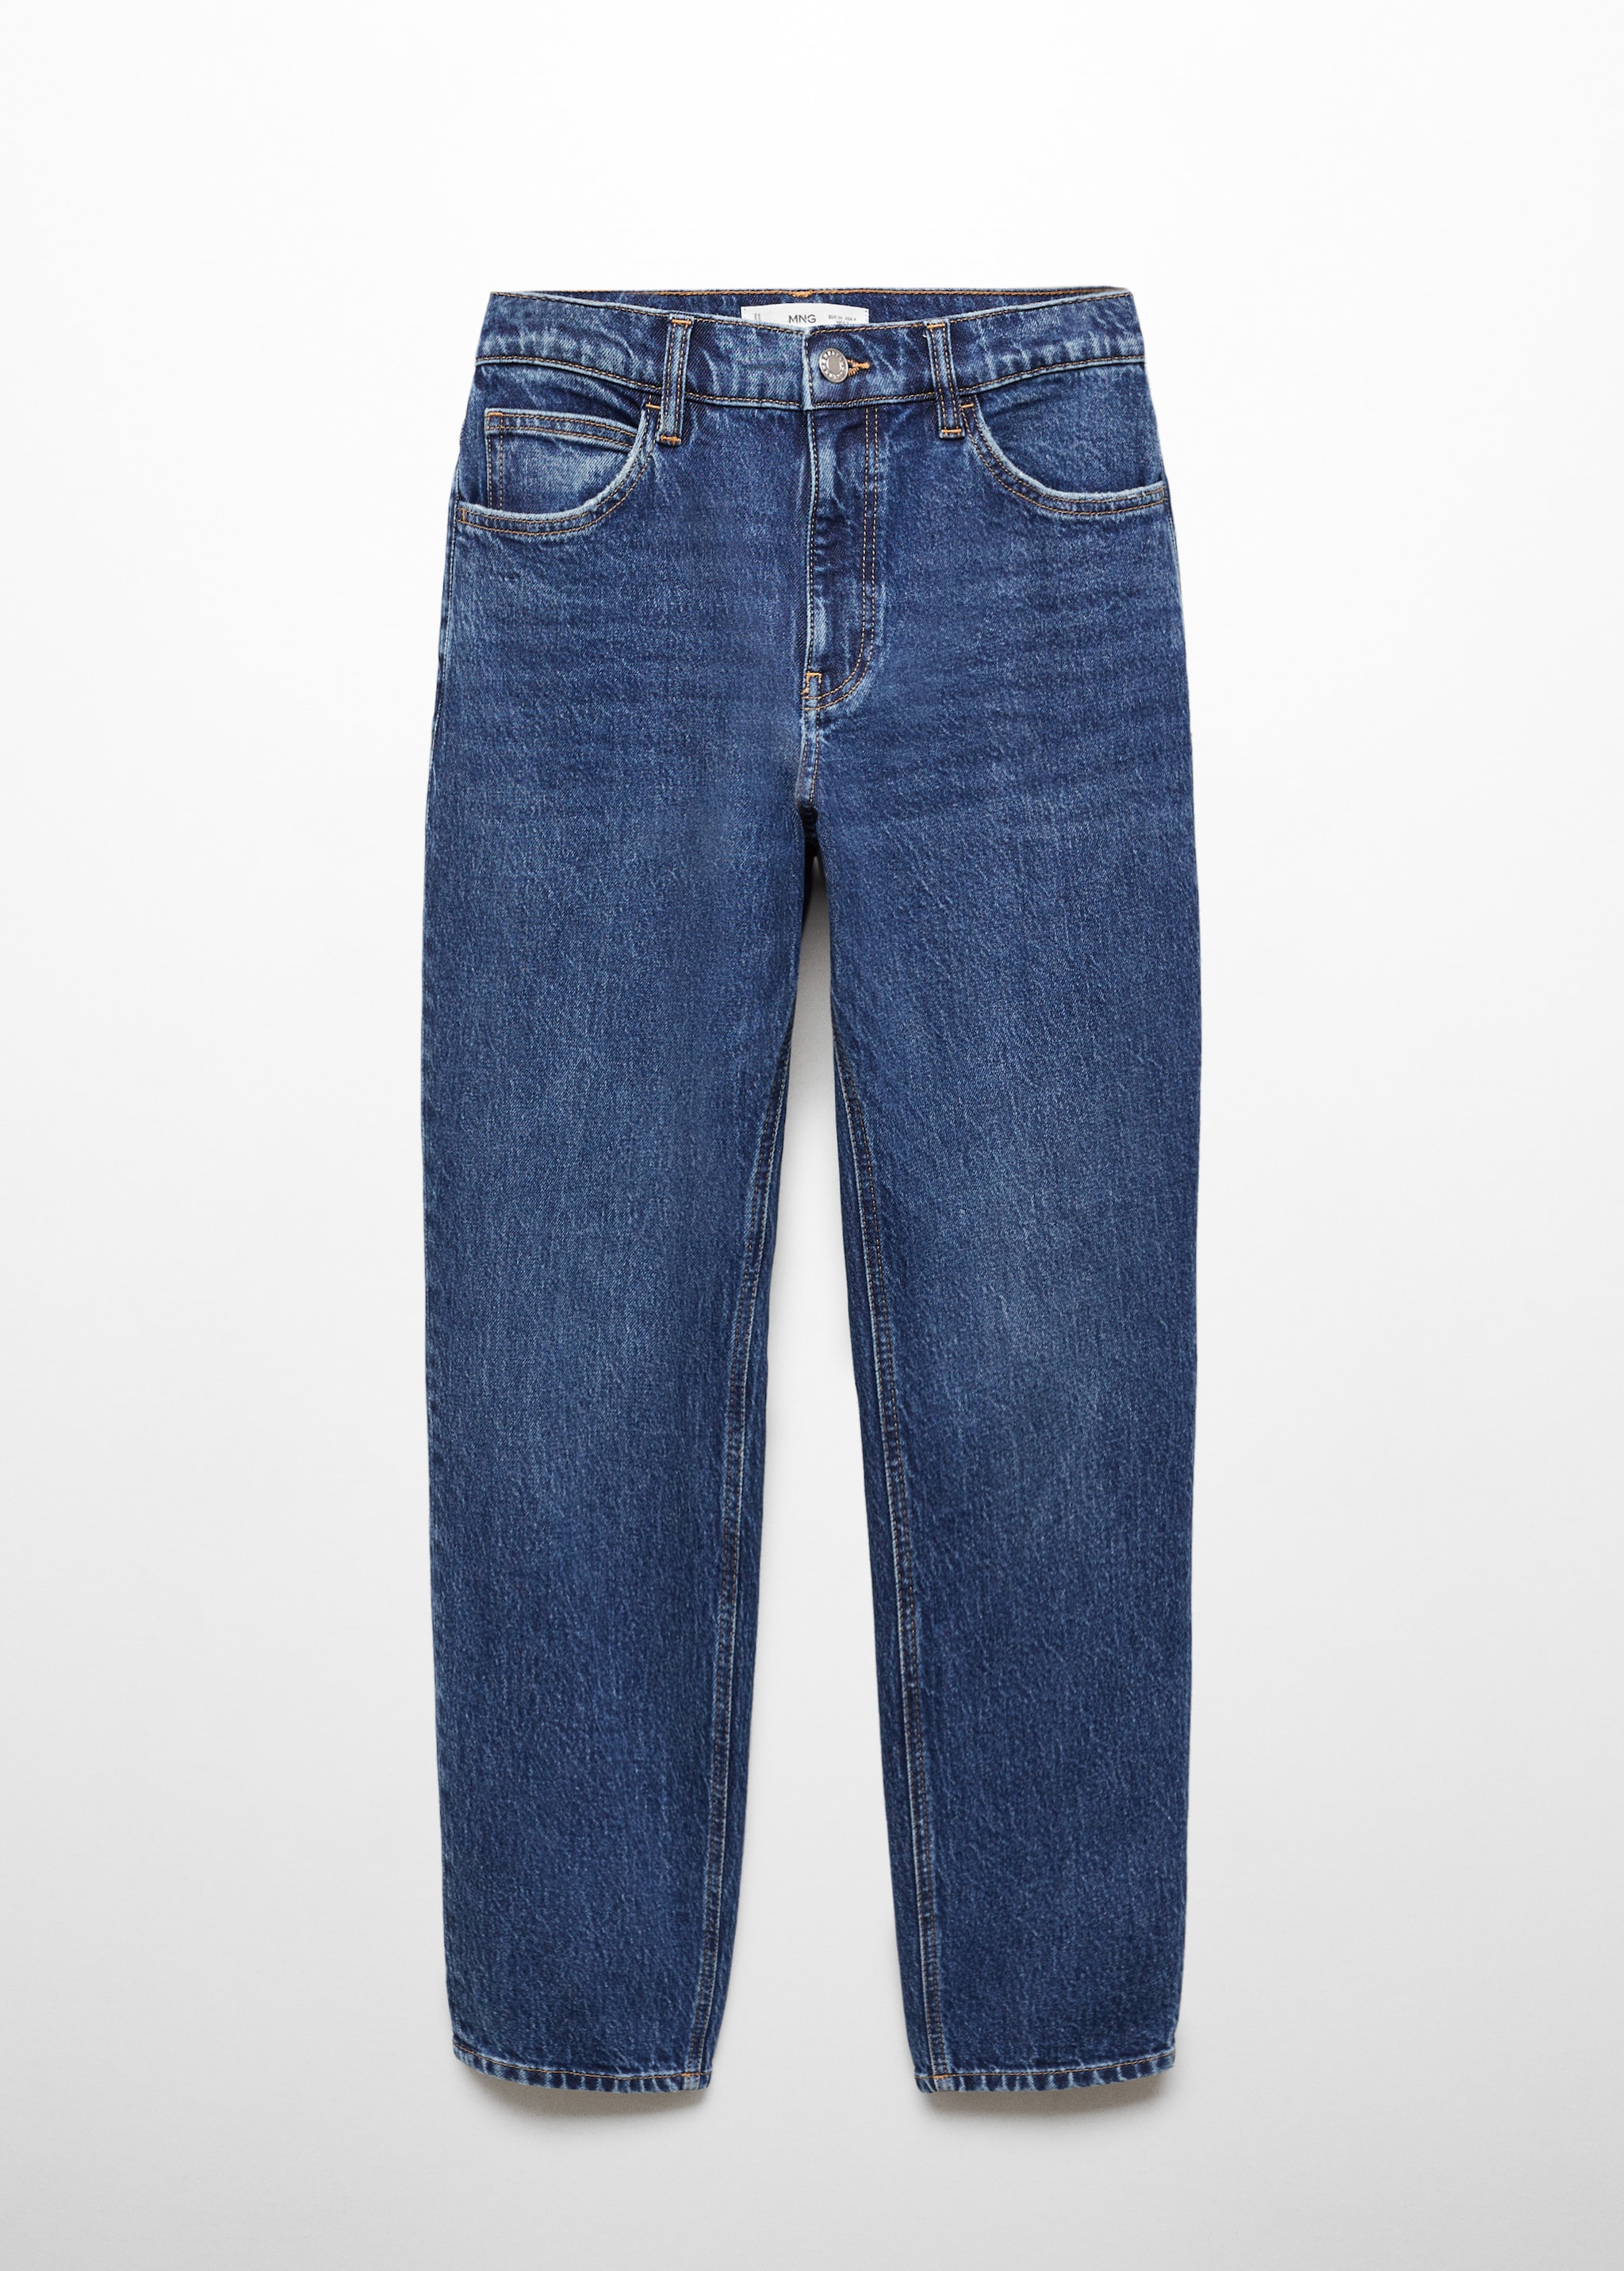 Newmom confort yüksek belli jean pantolon - Modelsiz ürün